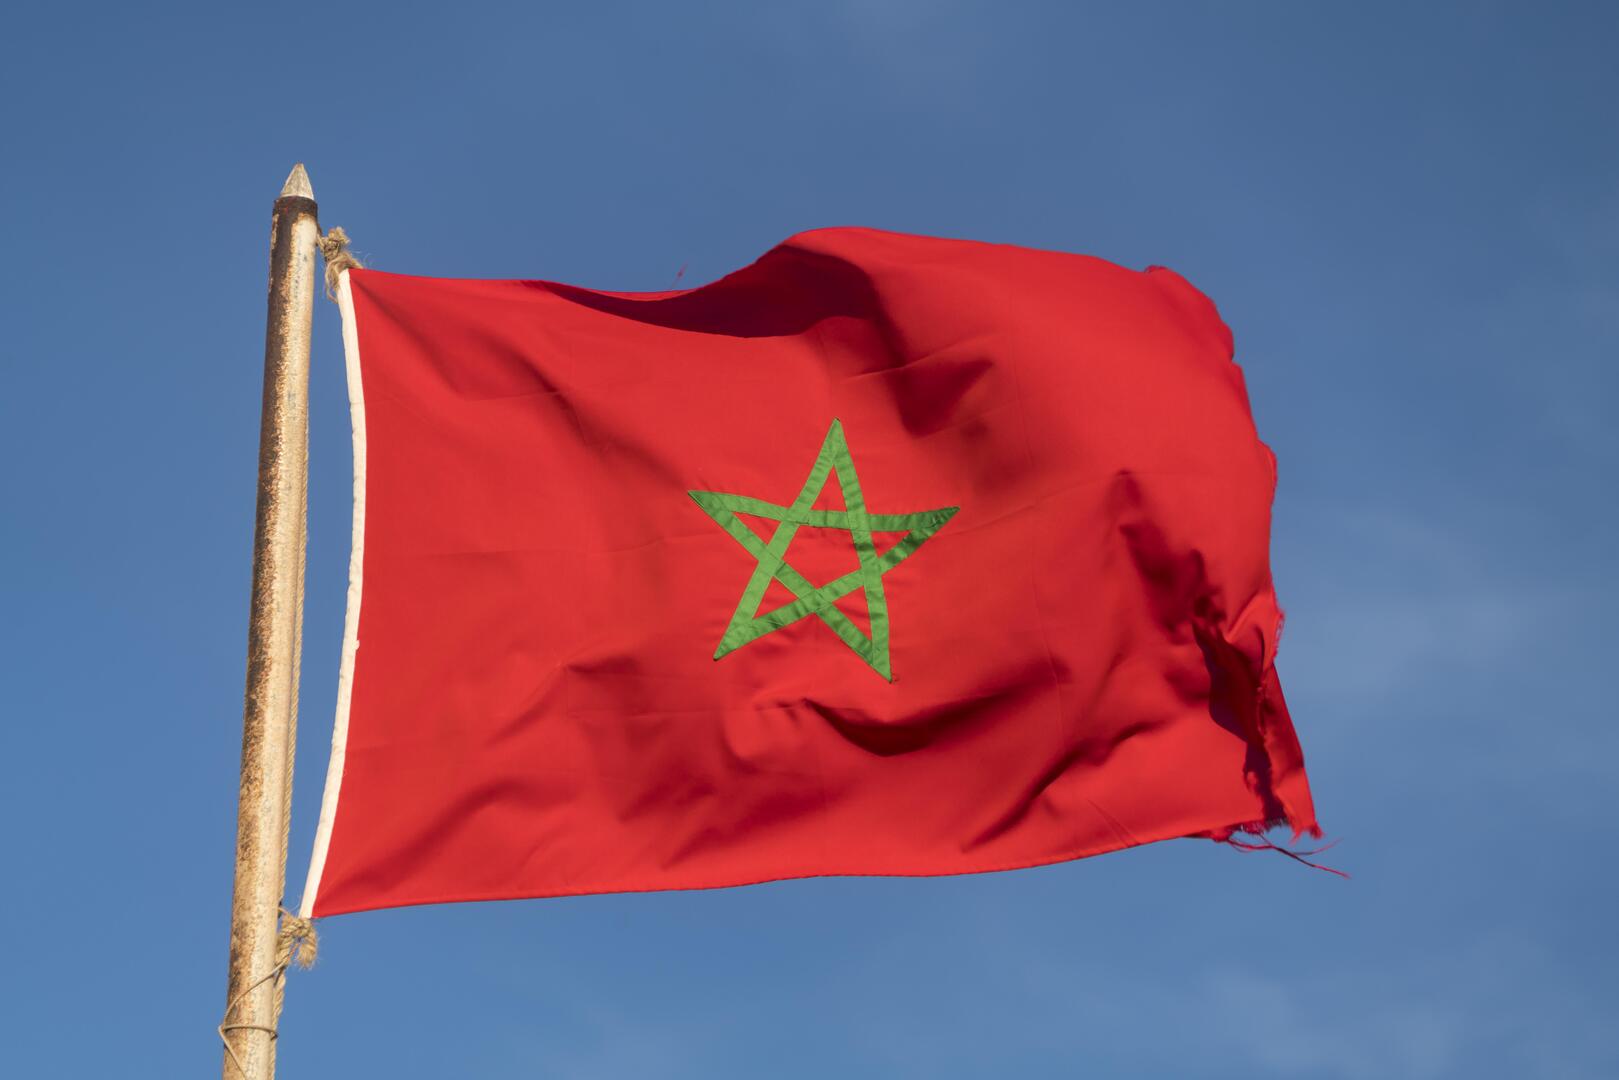 المغرب.. الكشف عن تفاصيل مقتل شرطي على يد 